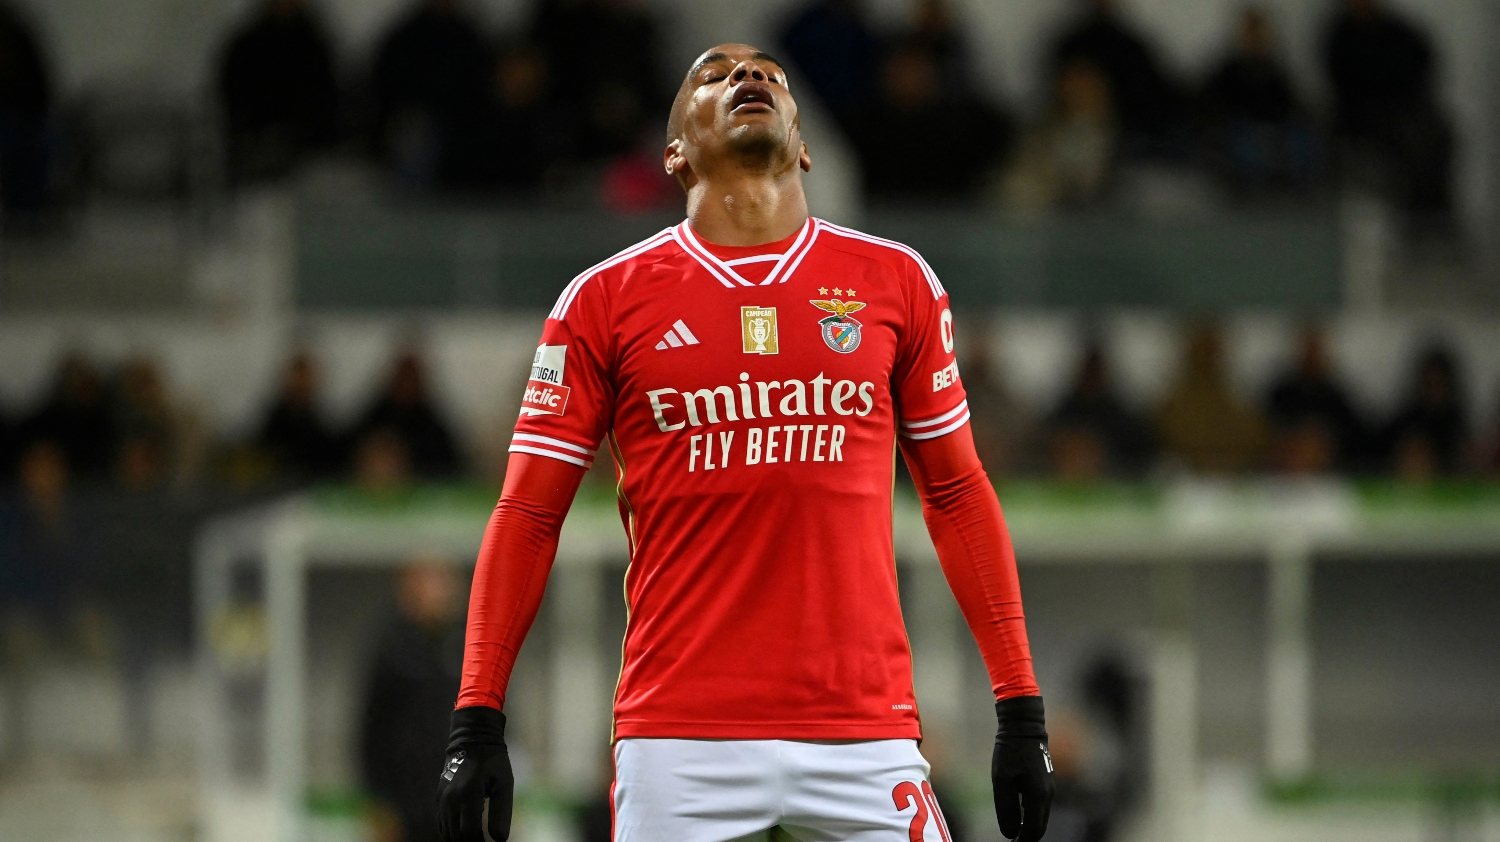 Benfica manda na casa dos leões em jogos da I Liga. Veja o